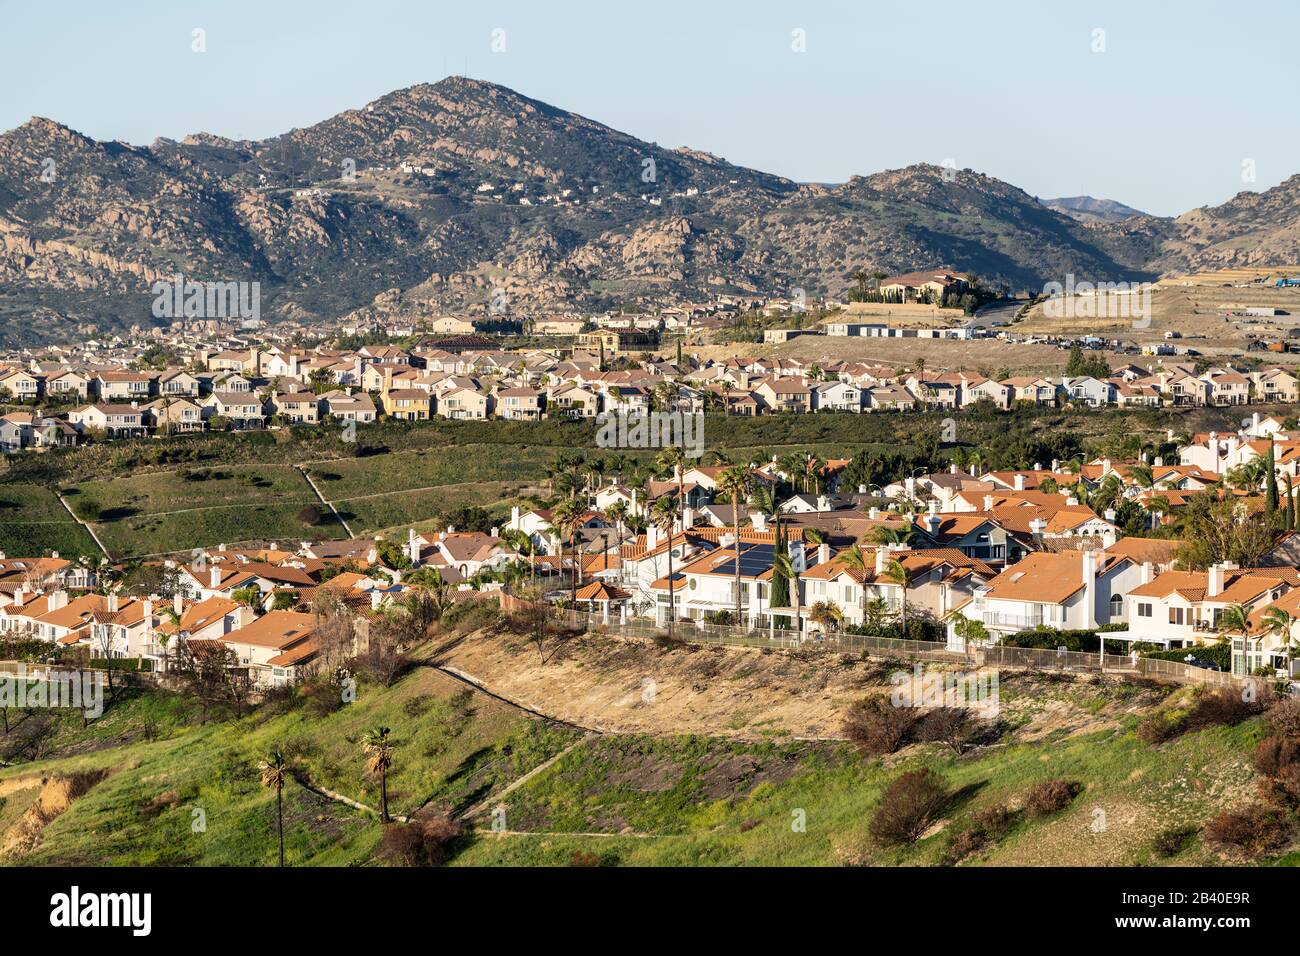 Rangées de maisons en haut d'une colline dans le nord de Los Angeles, Californie. La construction en cours et les montagnes de Santa Susana sont en arrière-plan. Banque D'Images